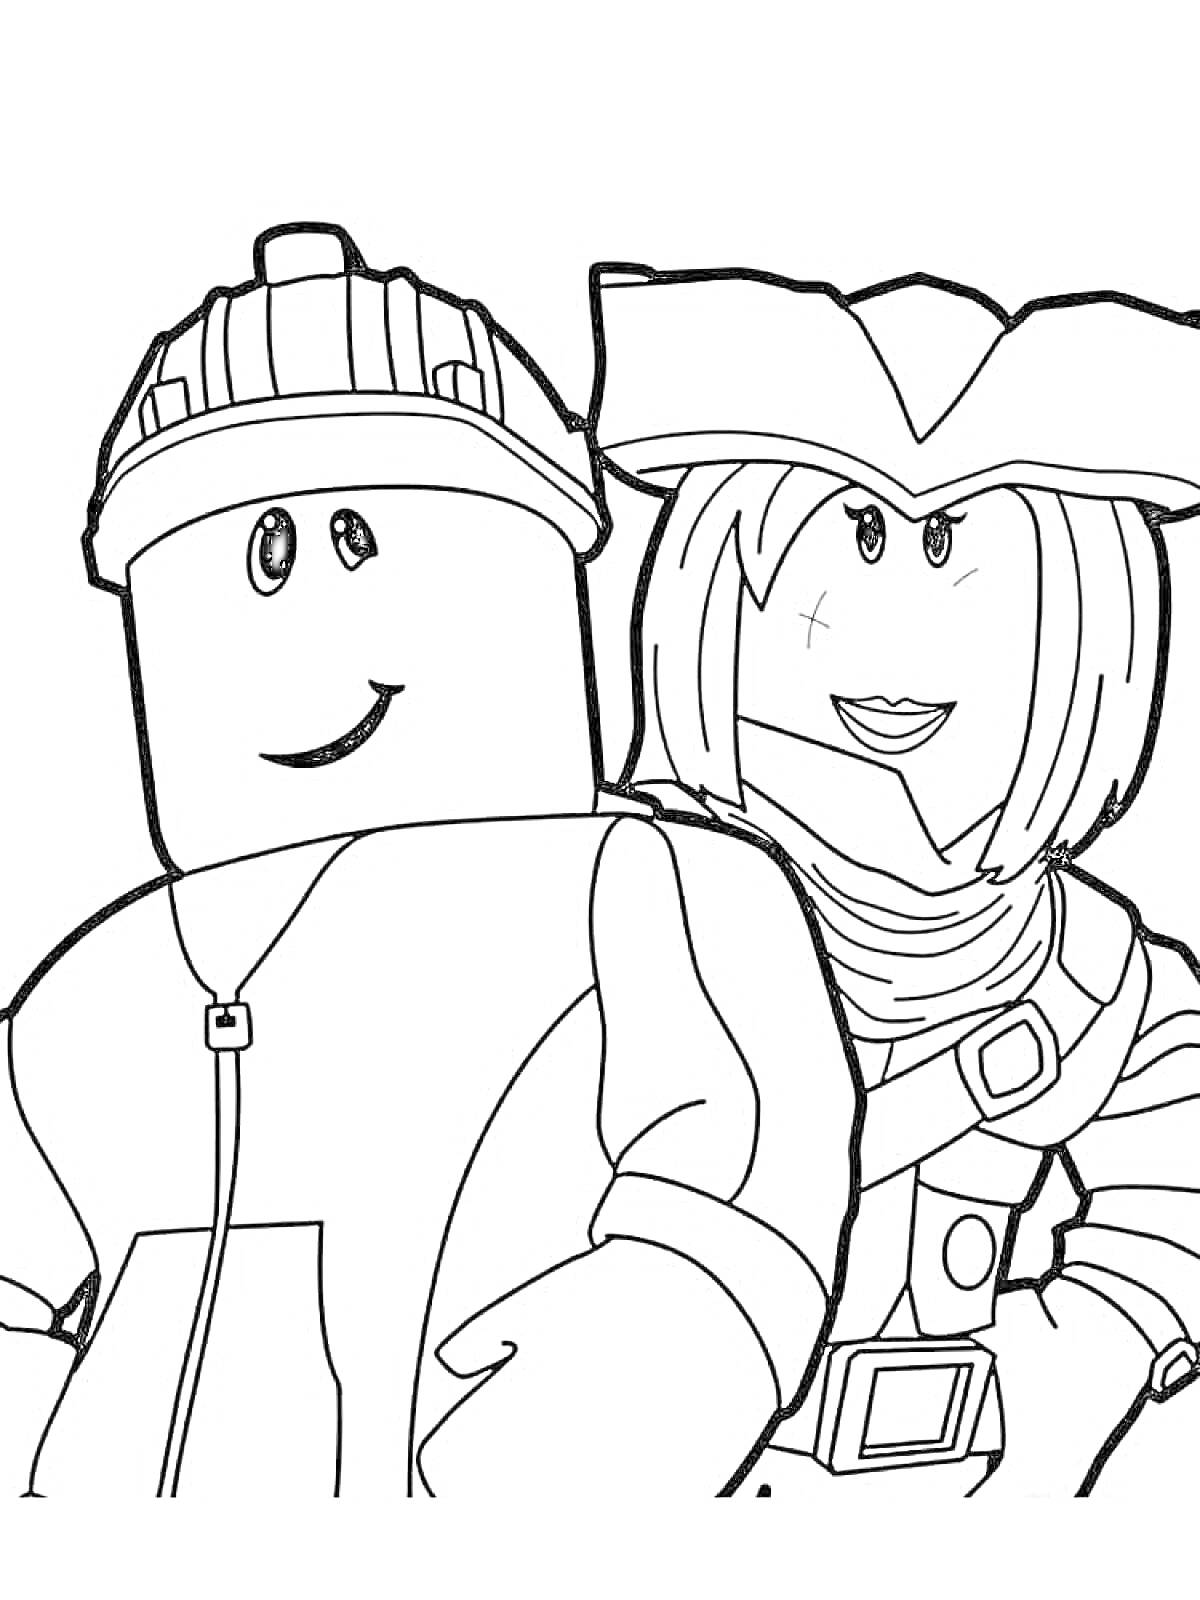 Раскраска Два персонажа в стиле Roblox: один в шлеме и толстовке, другой в пиратской шляпе и наряде